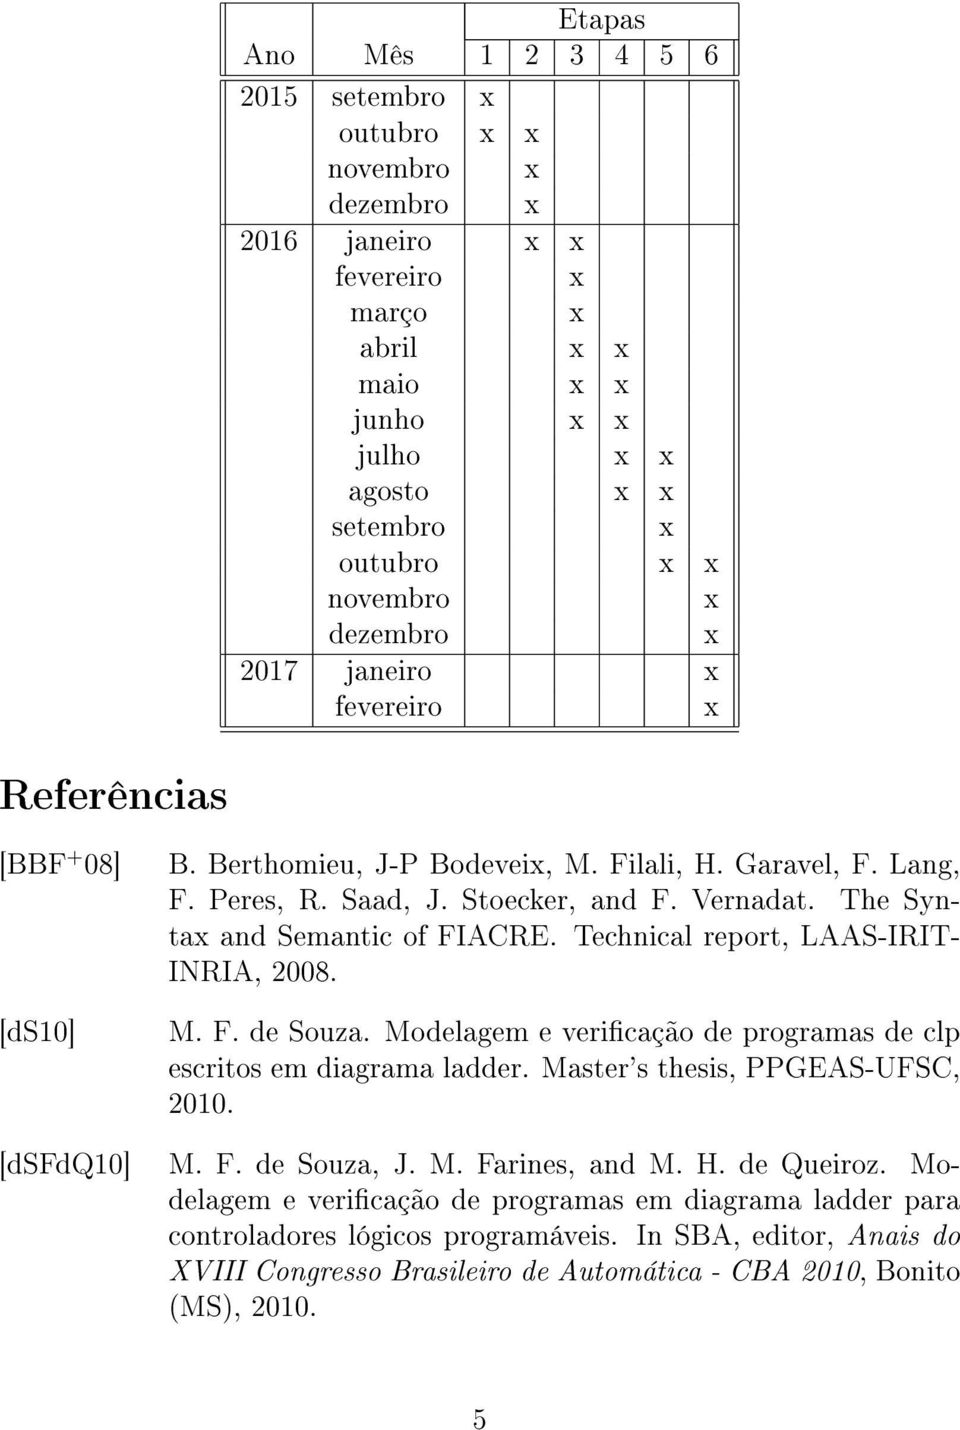 Technical report, LAAS-IRIT- INRIA, 2008. M. F. de Souza. Modelagem e vericação de programas de clp escritos em diagrama ladder. Master's thesis, PPGEAS-UFSC, 2010. [dsfdq10] M. F. de Souza, J.